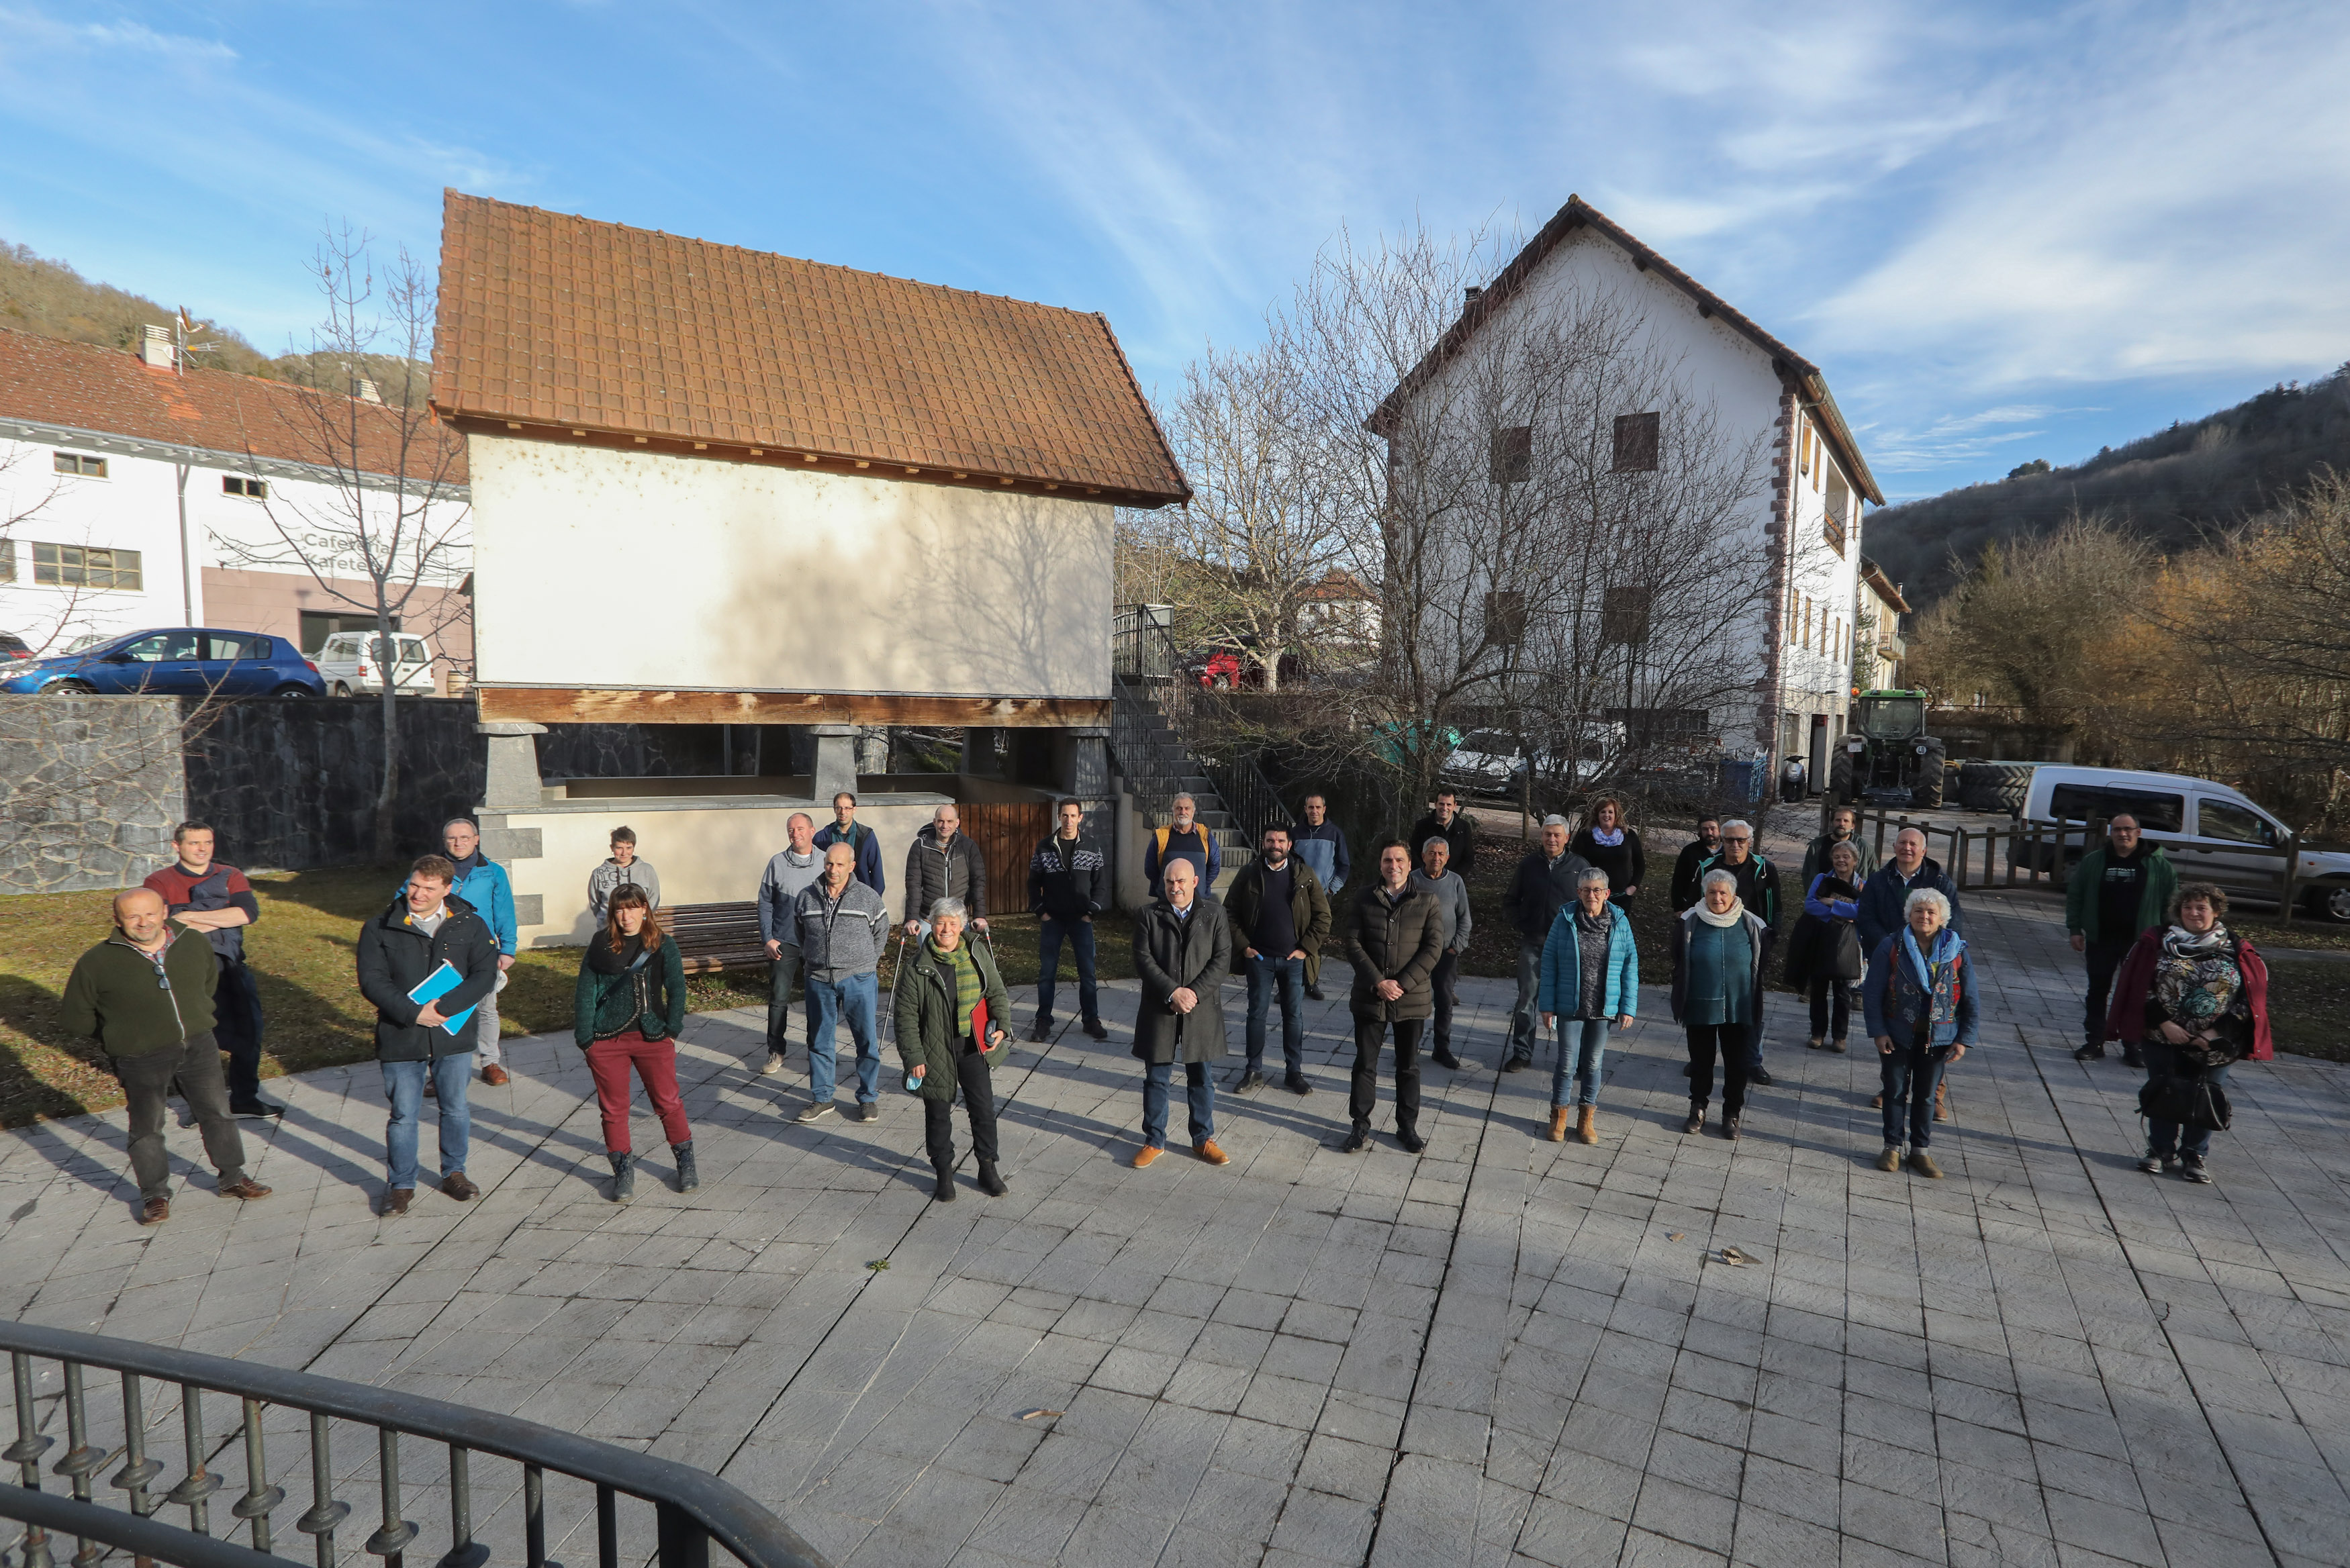 Fotografía de varias personas de pie en una plaza de un pueblo.